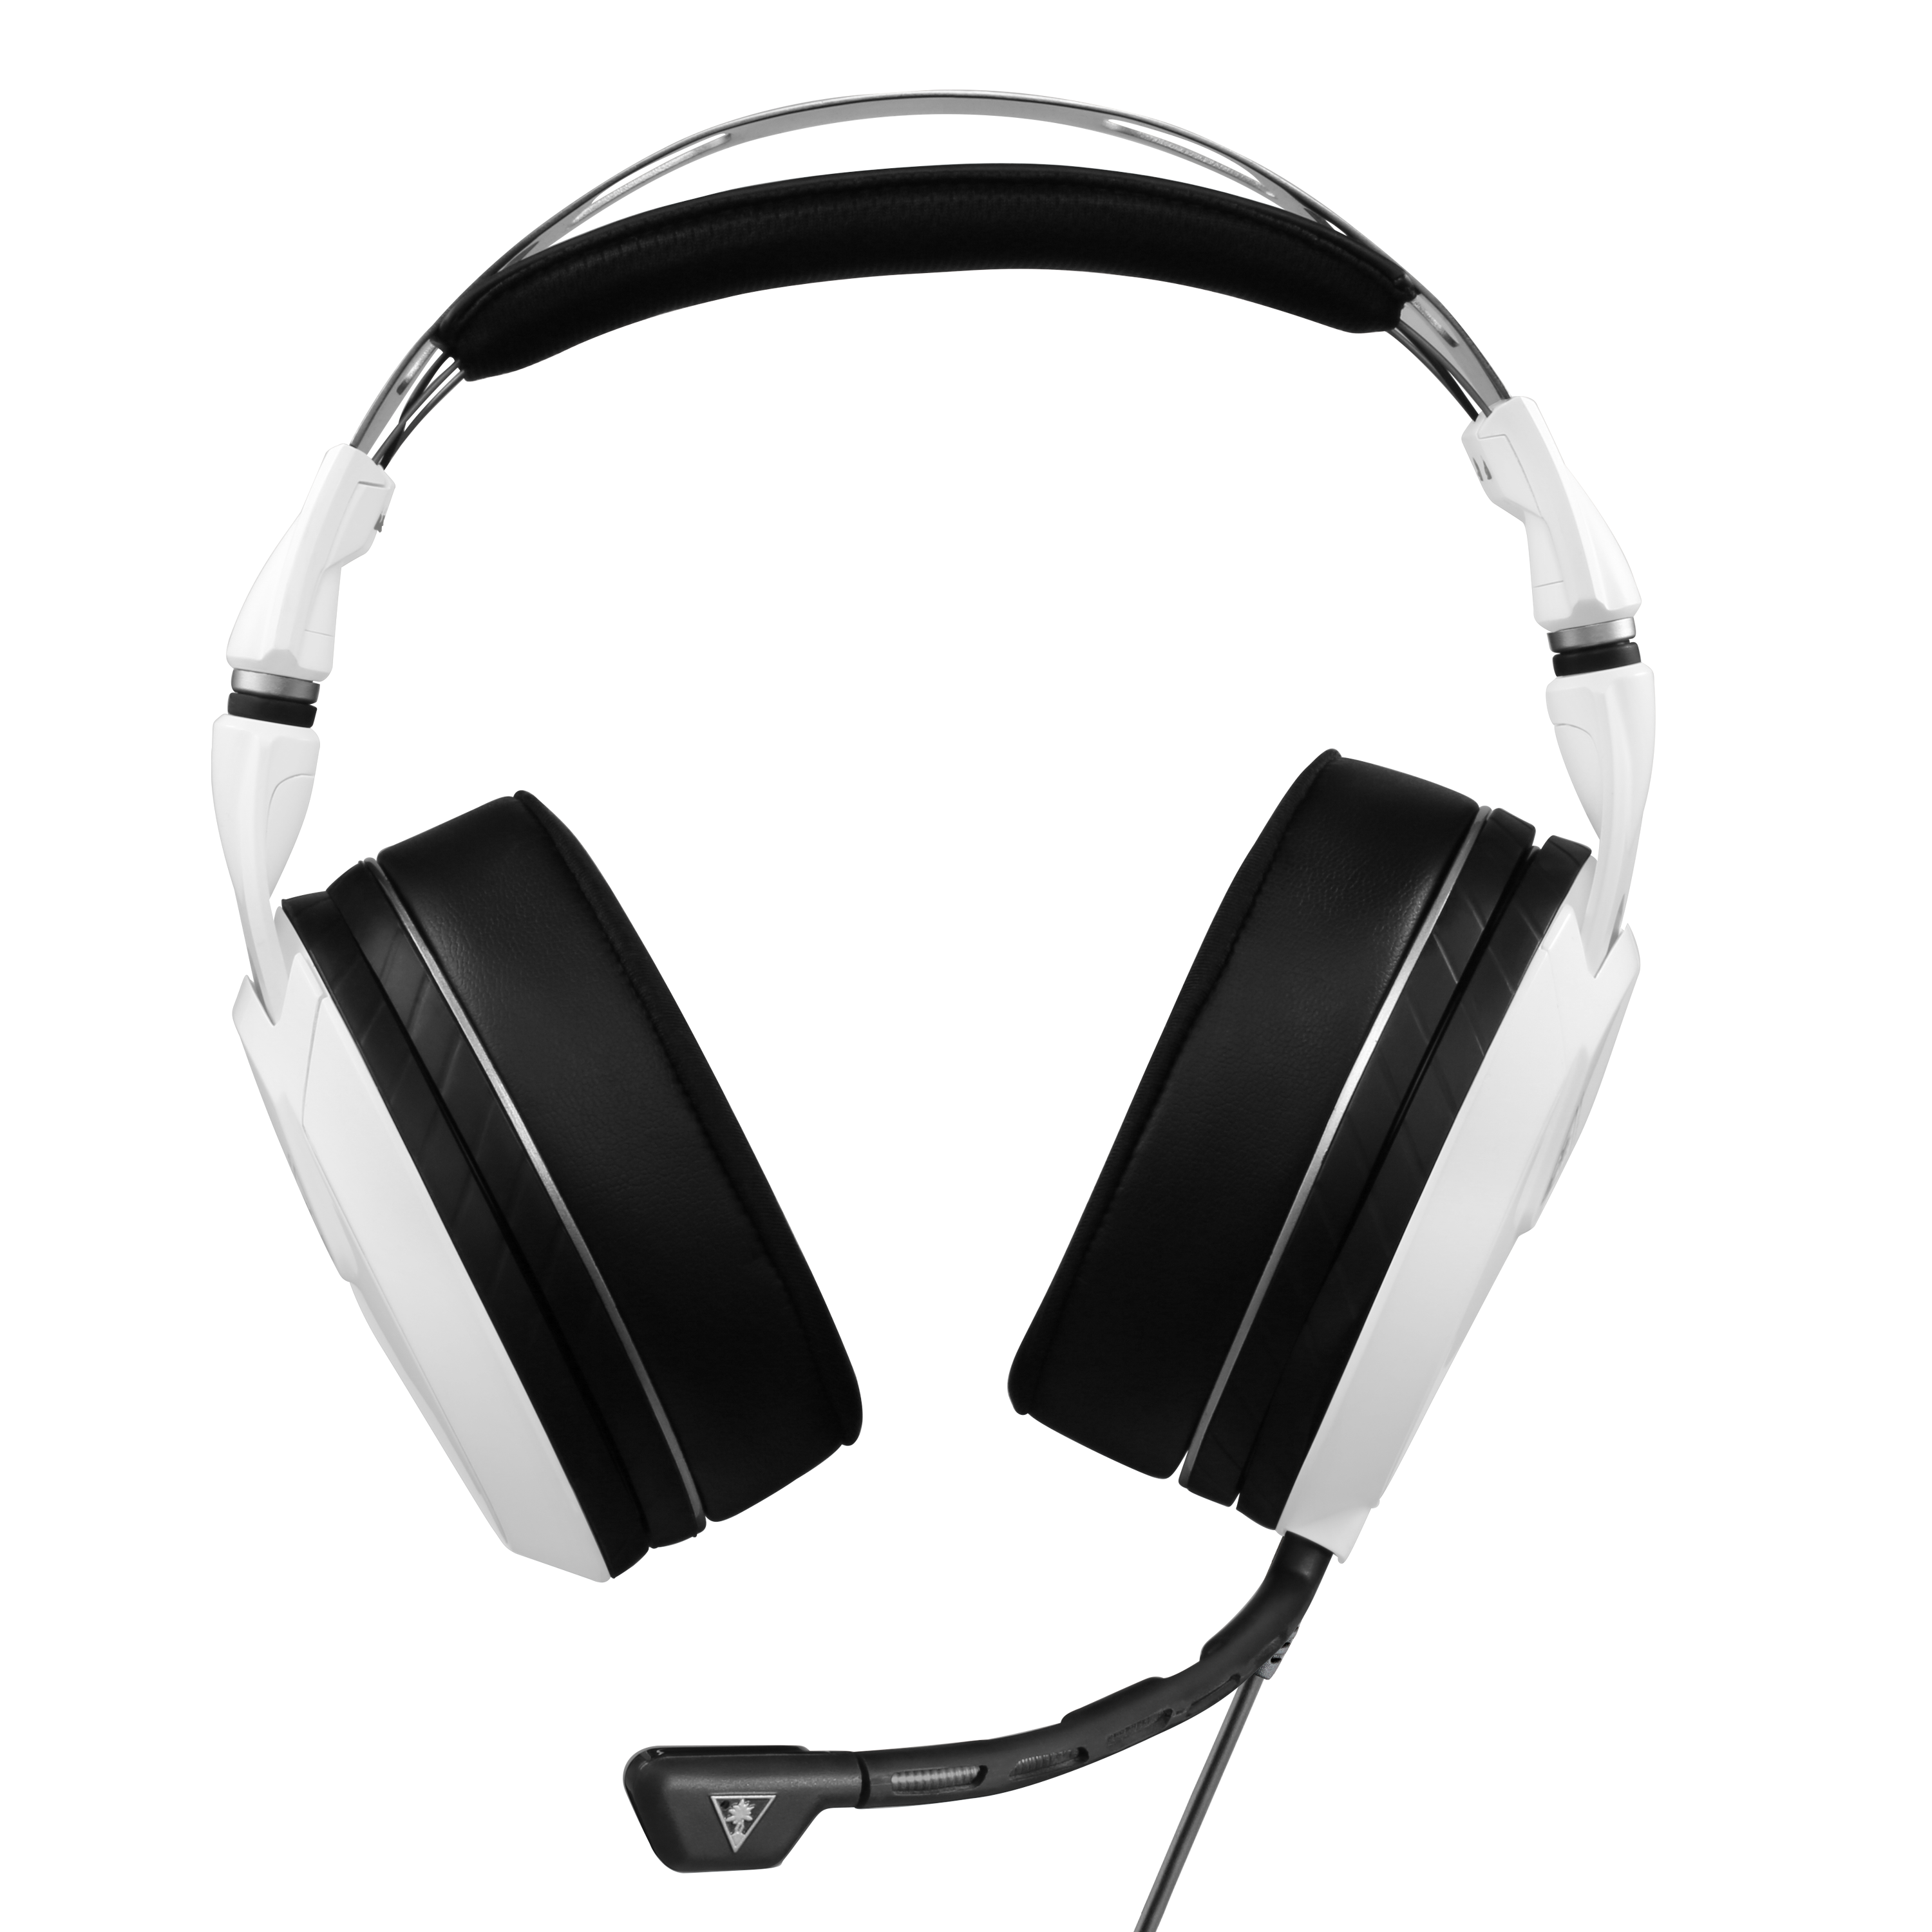 xbox elite pro 2 headset